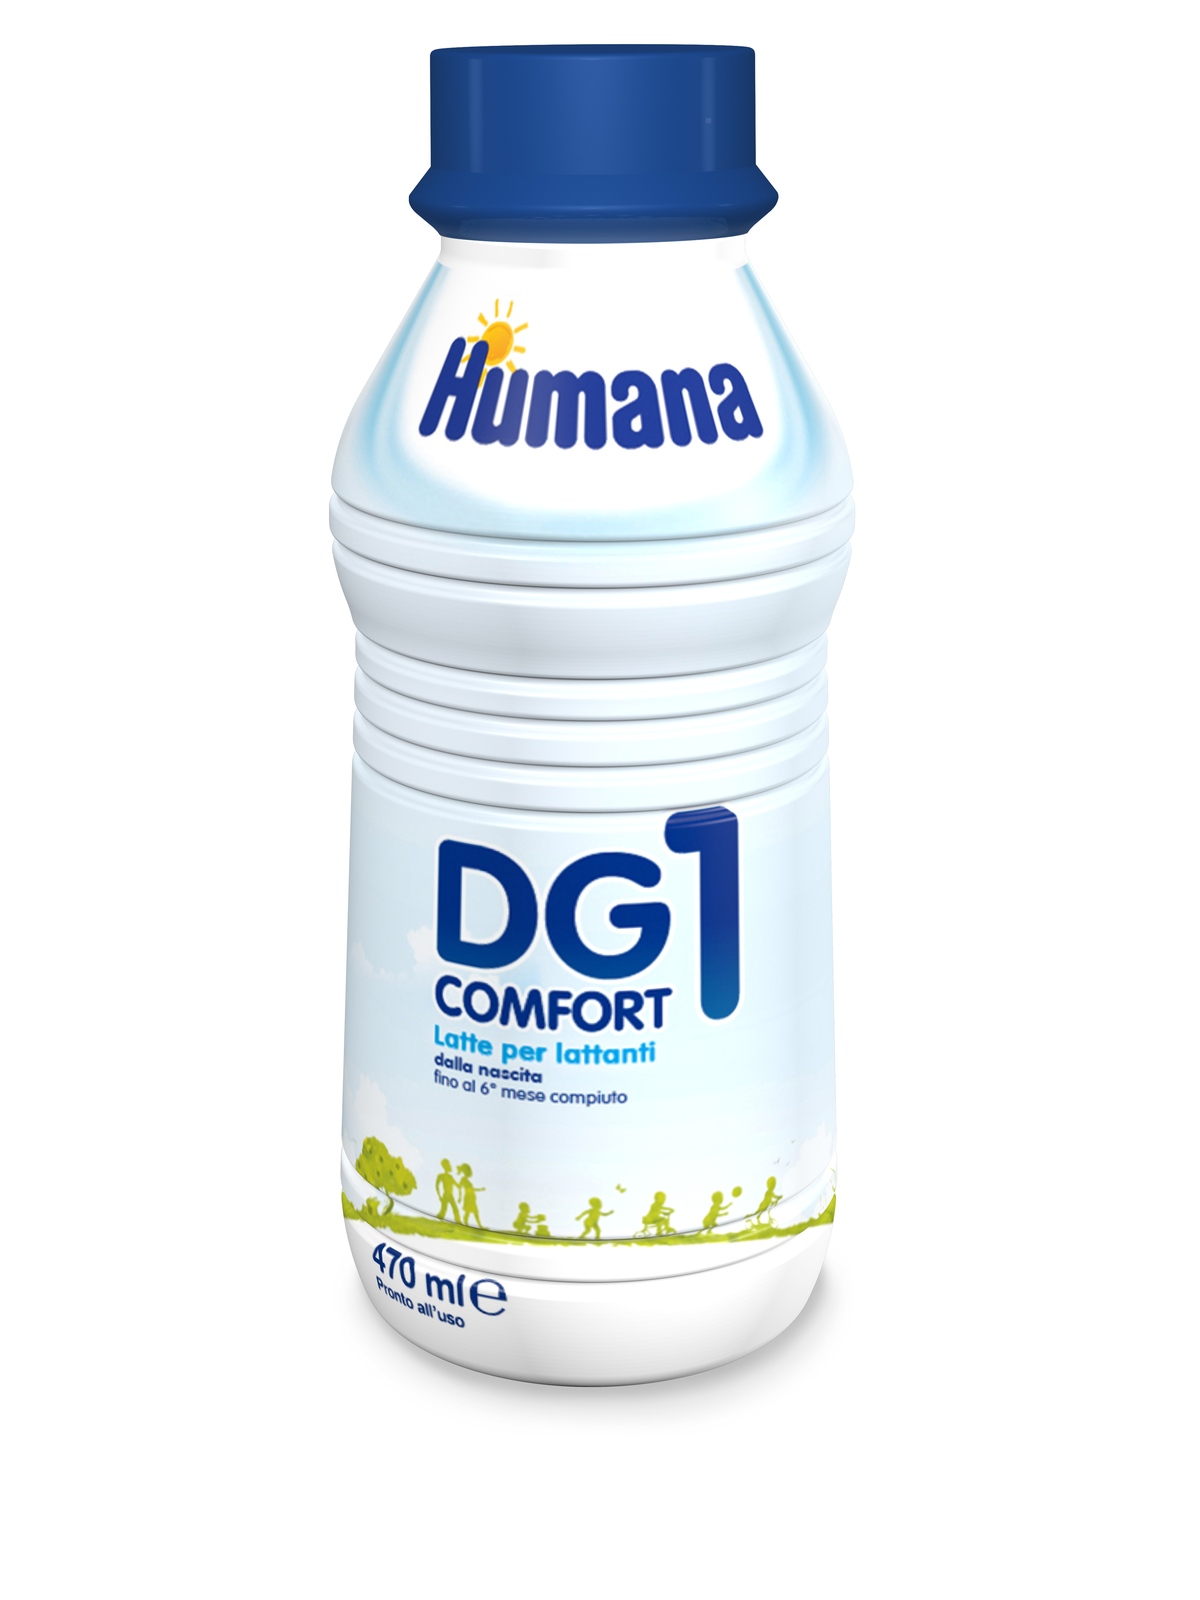 Humana latte dg1 comfort liquido 470ml - Bimbostore